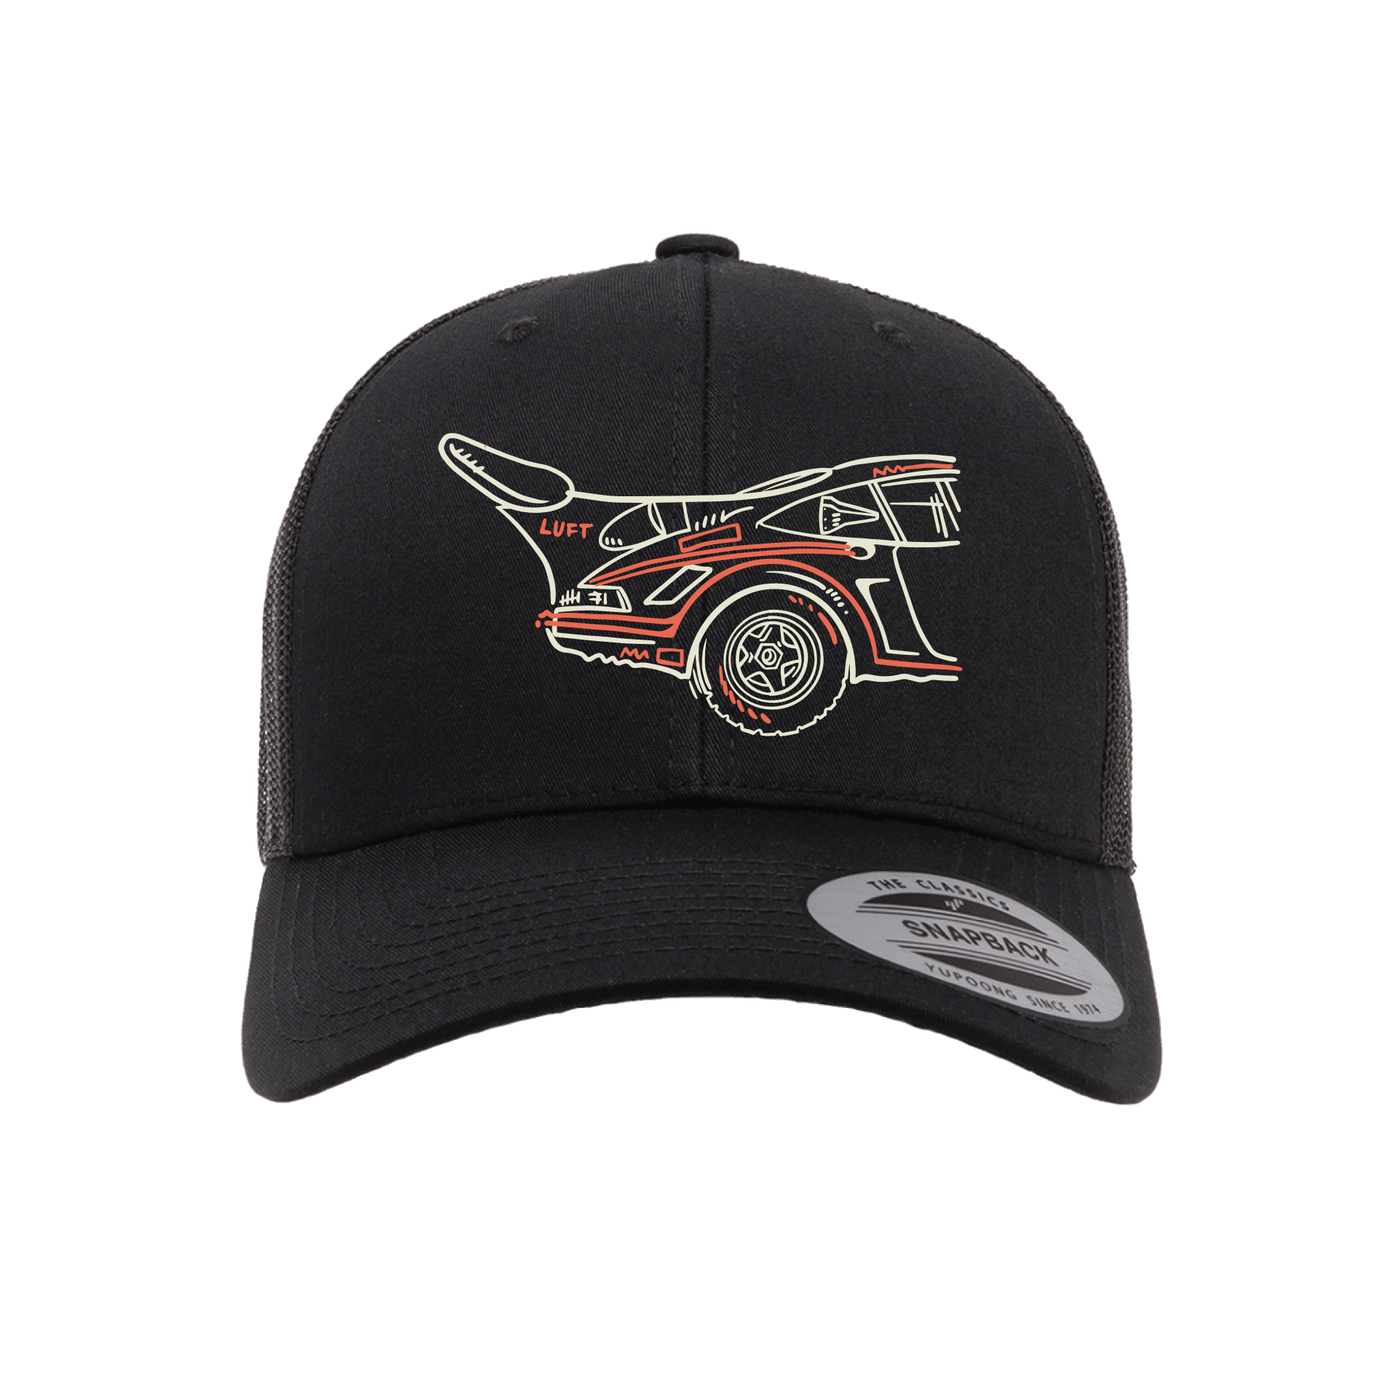 Luft 9 Trucker Hat